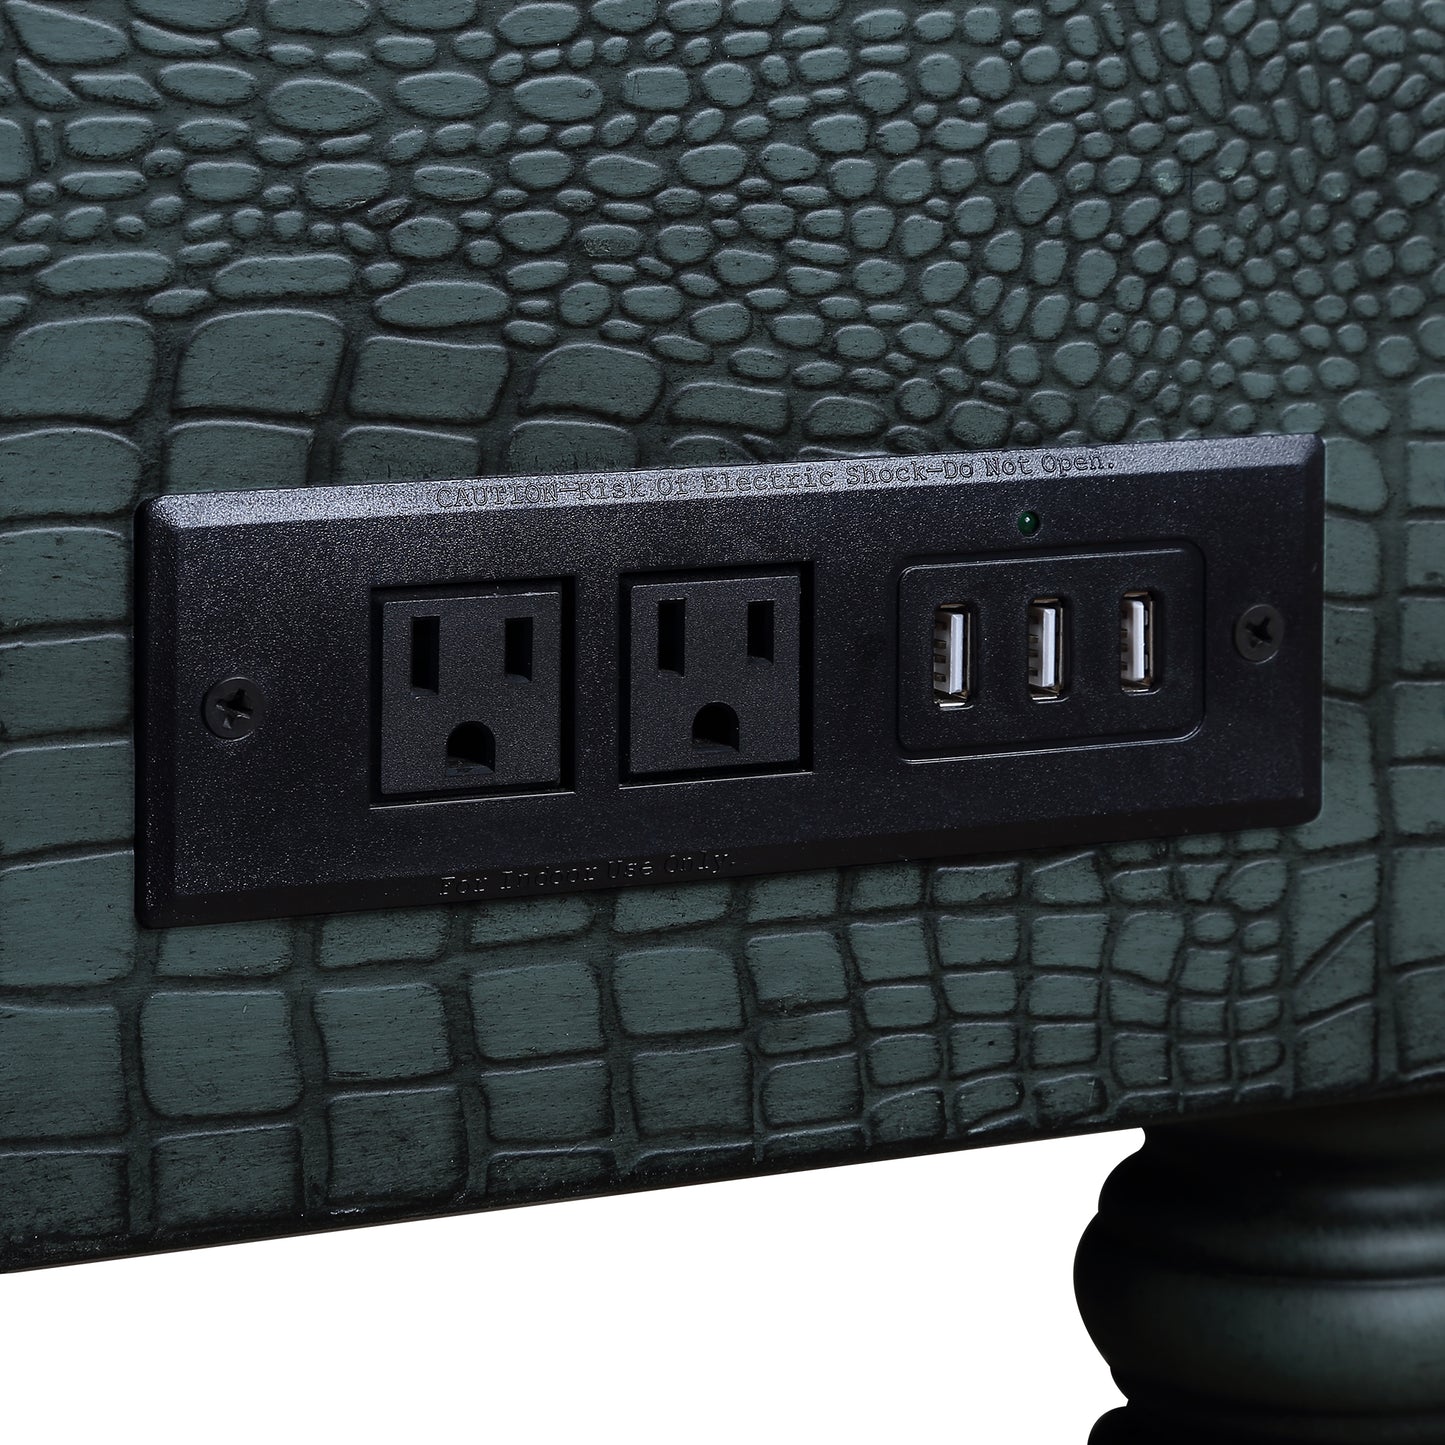 Sofa-Konsolentisch aus Kiefernholz mit Krokodilleder (2 Steckdosen + 2 USB-Anschlüsse), Antikgrün